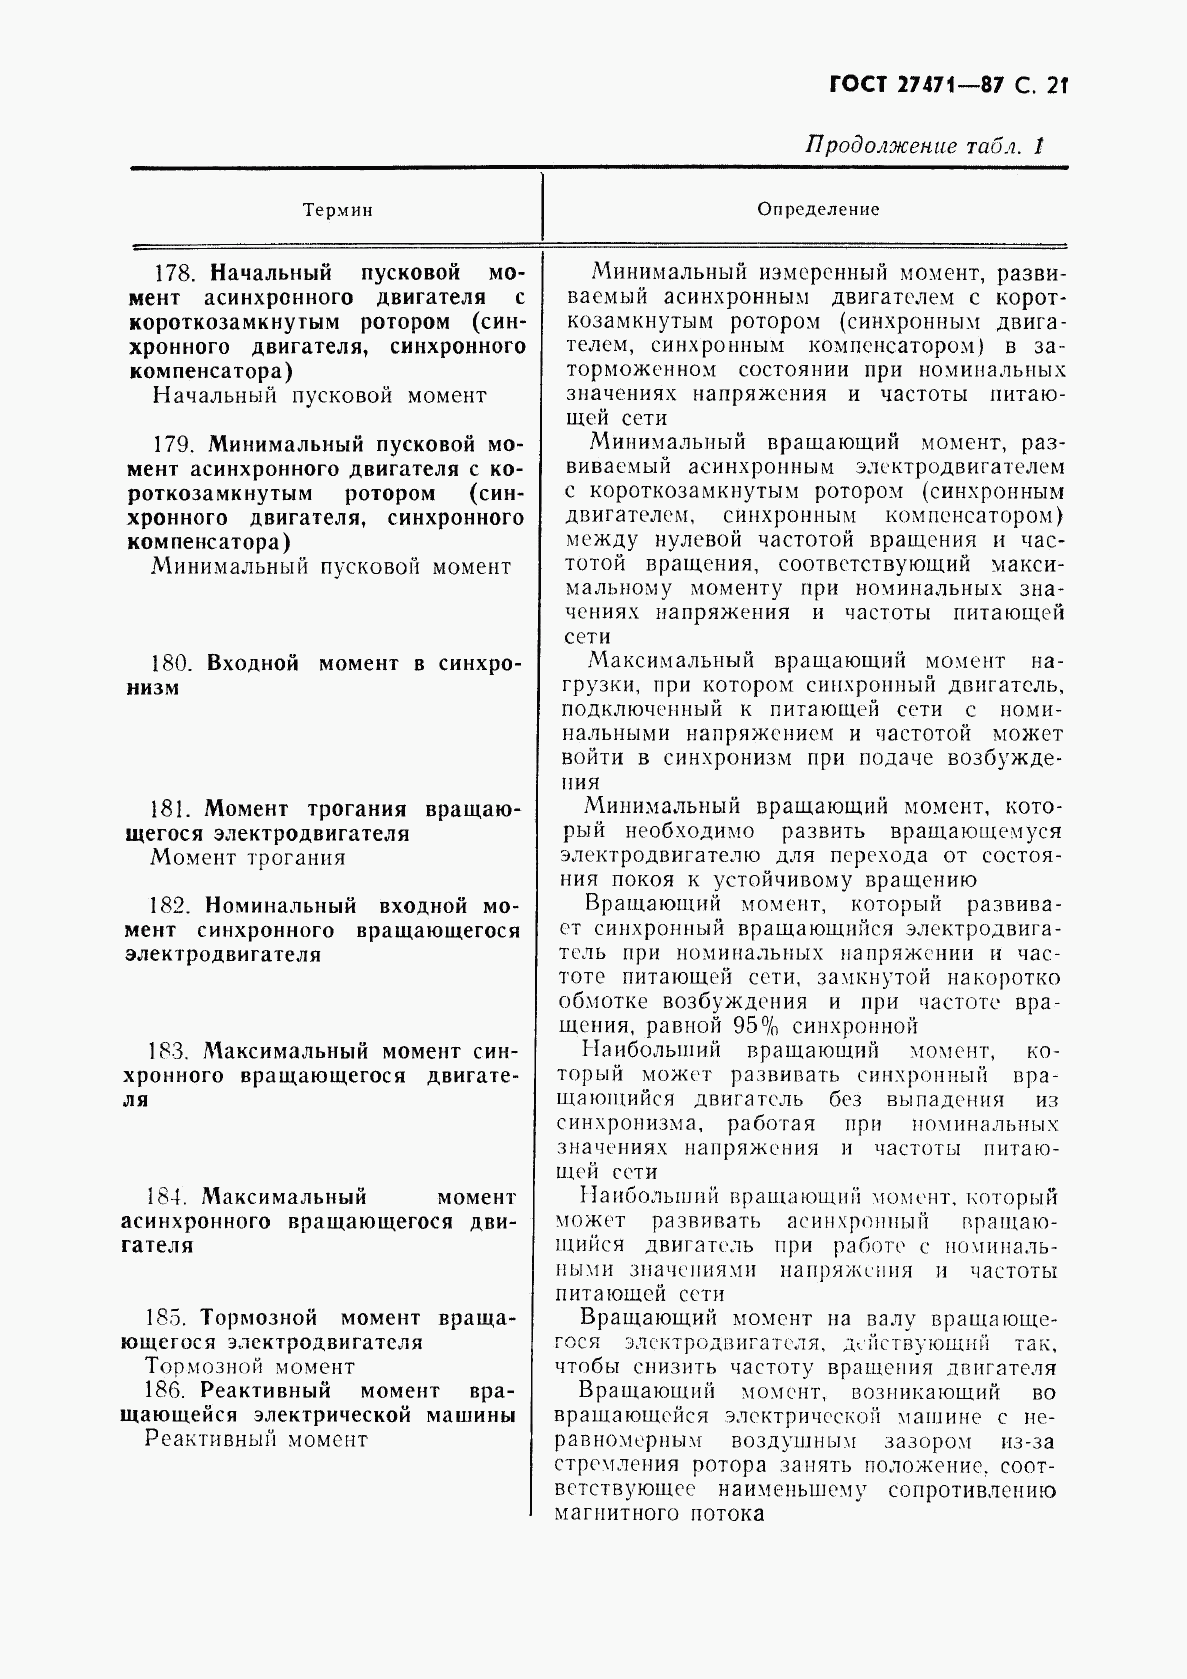 ГОСТ 27471-87, страница 22